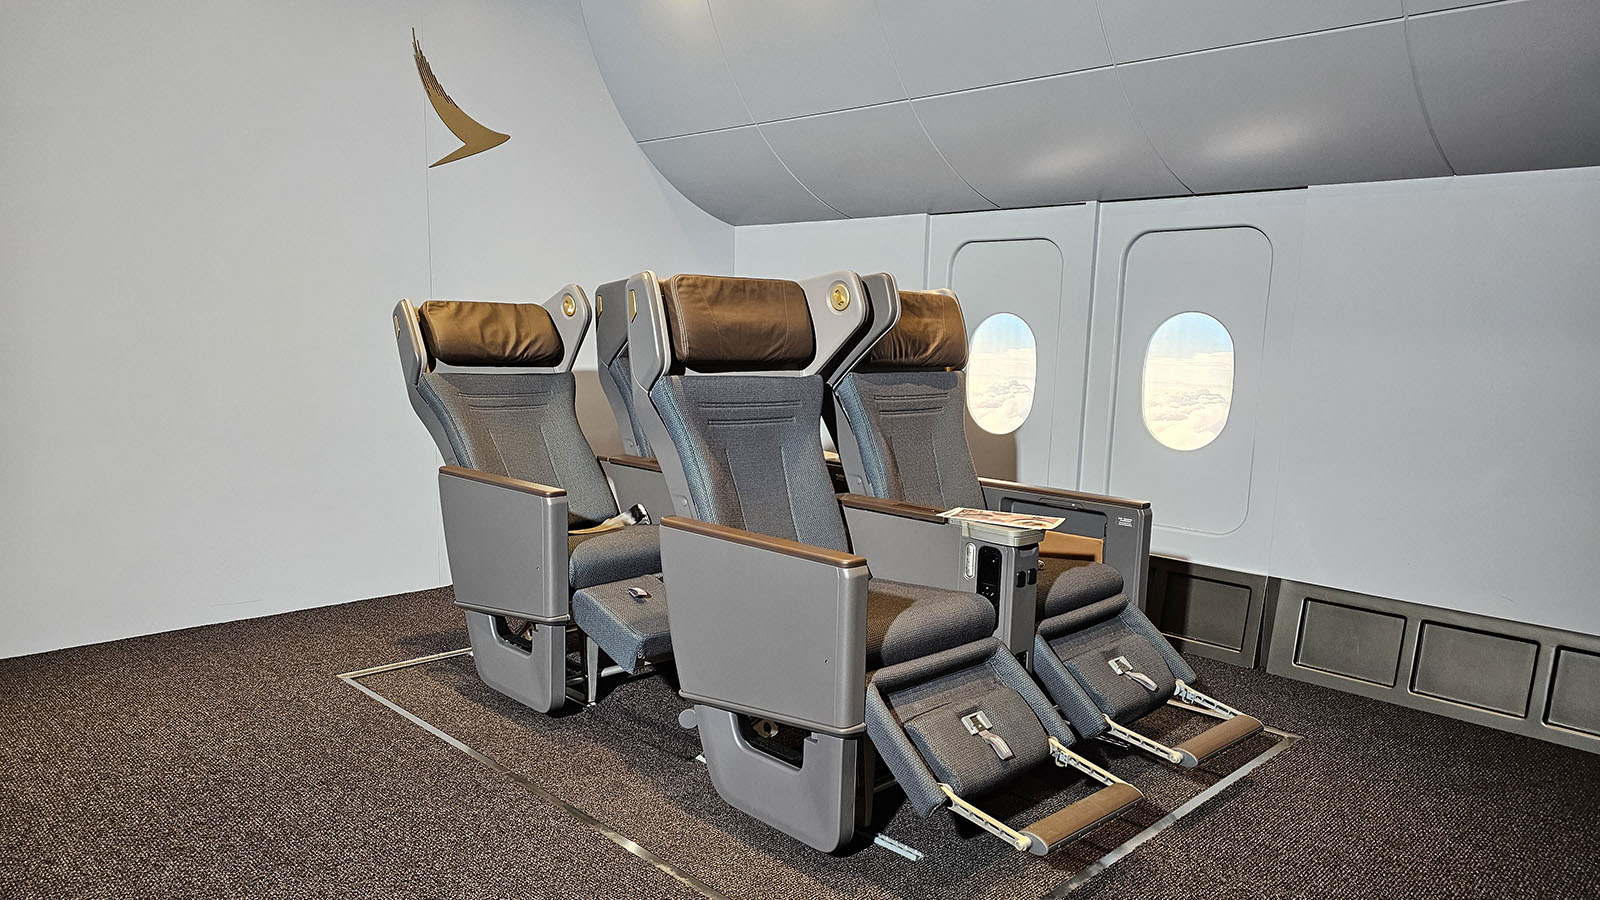 Cathay Pacific's new Premium Economy seat